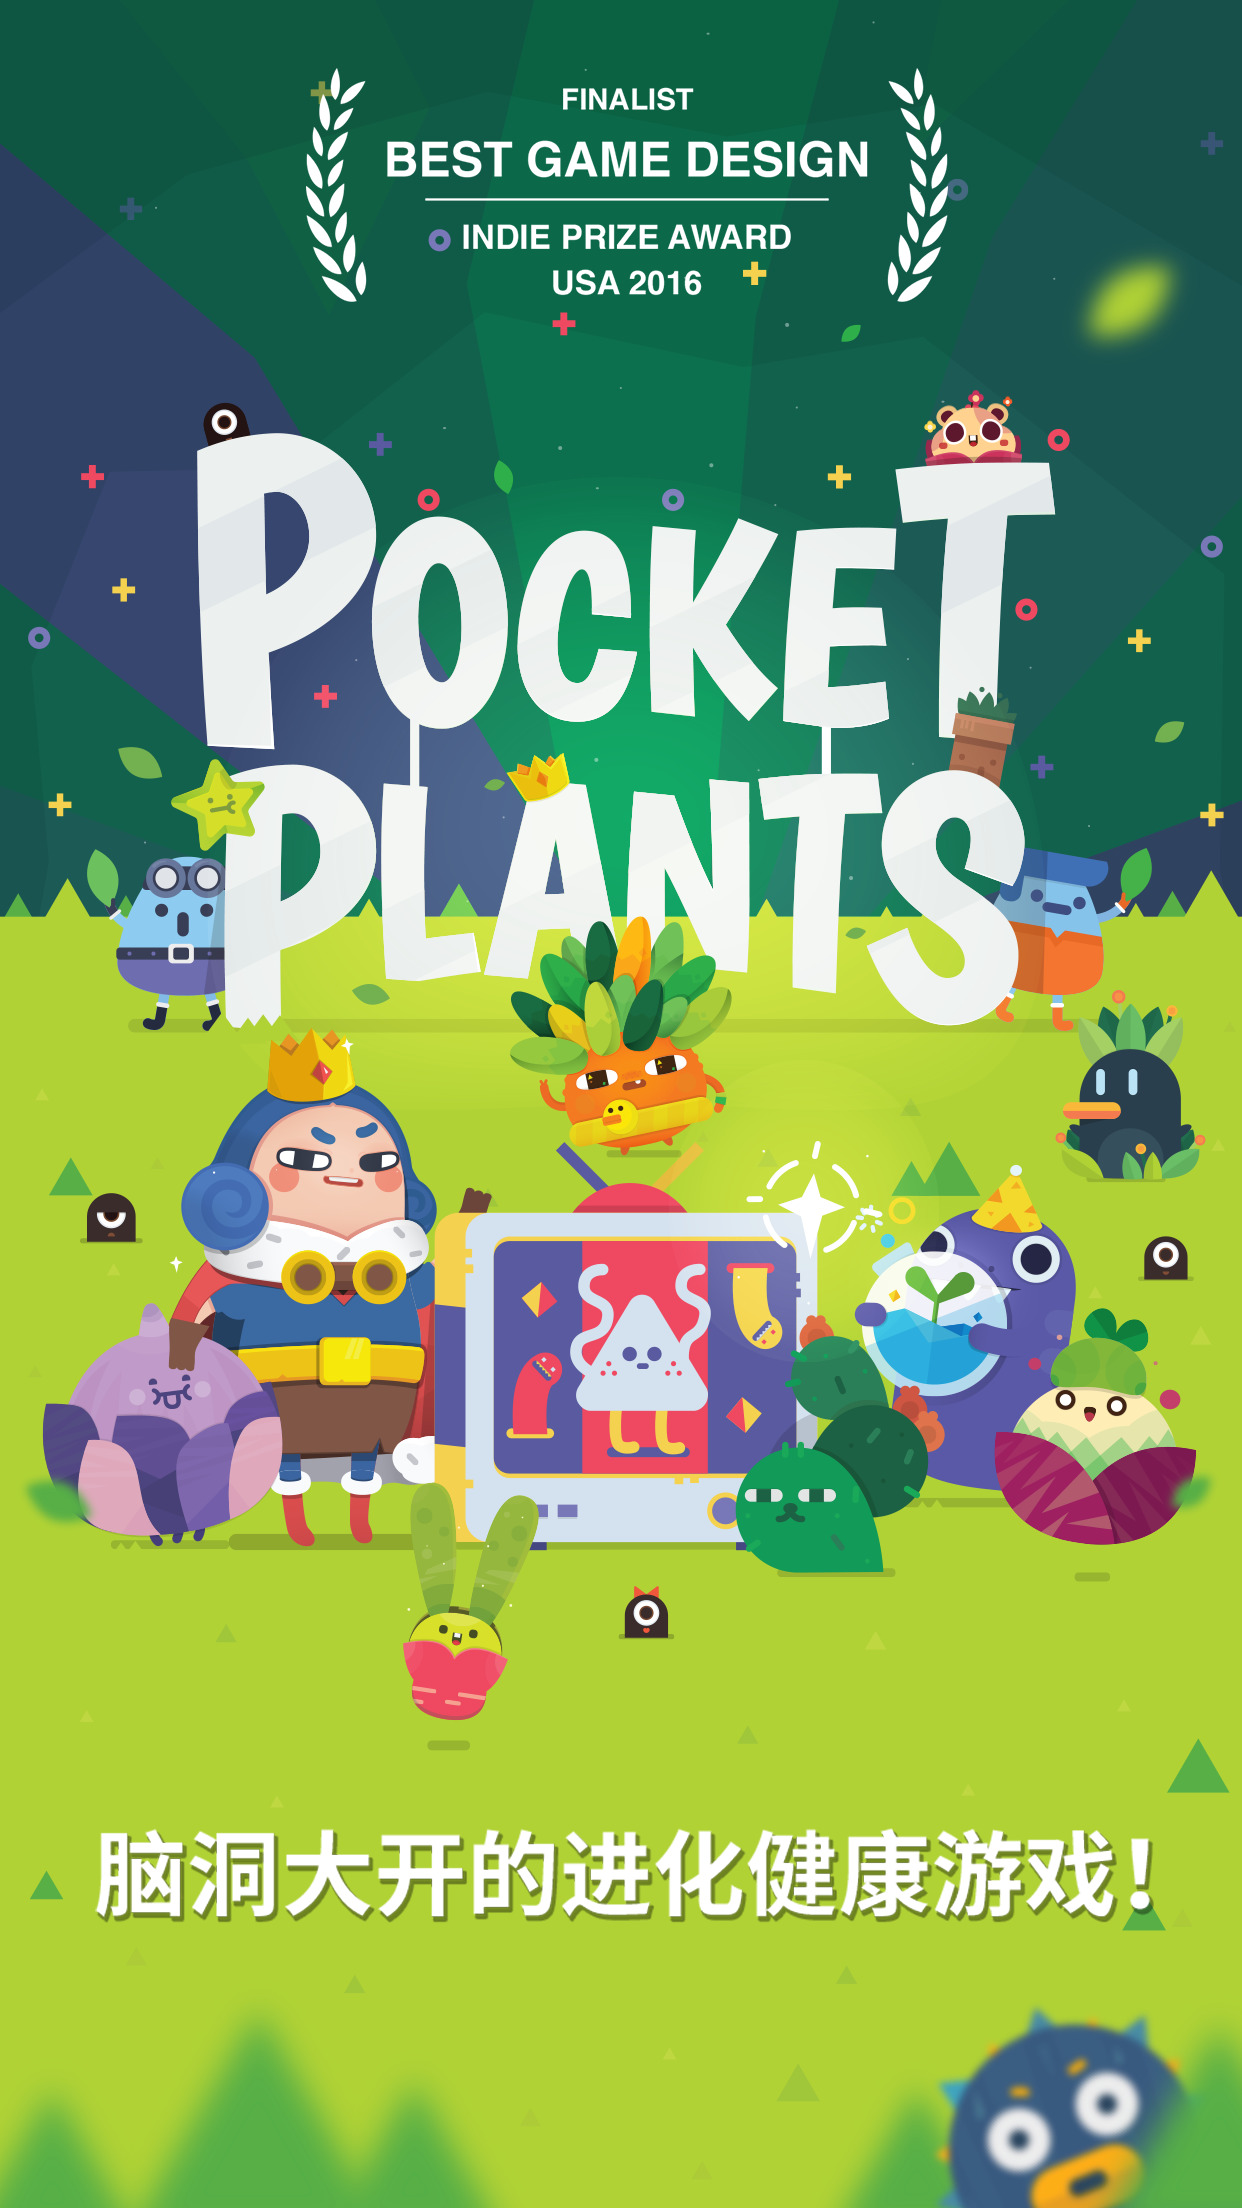 口袋植物：Pocket Plants耗费流量吗？怎么节约流量？